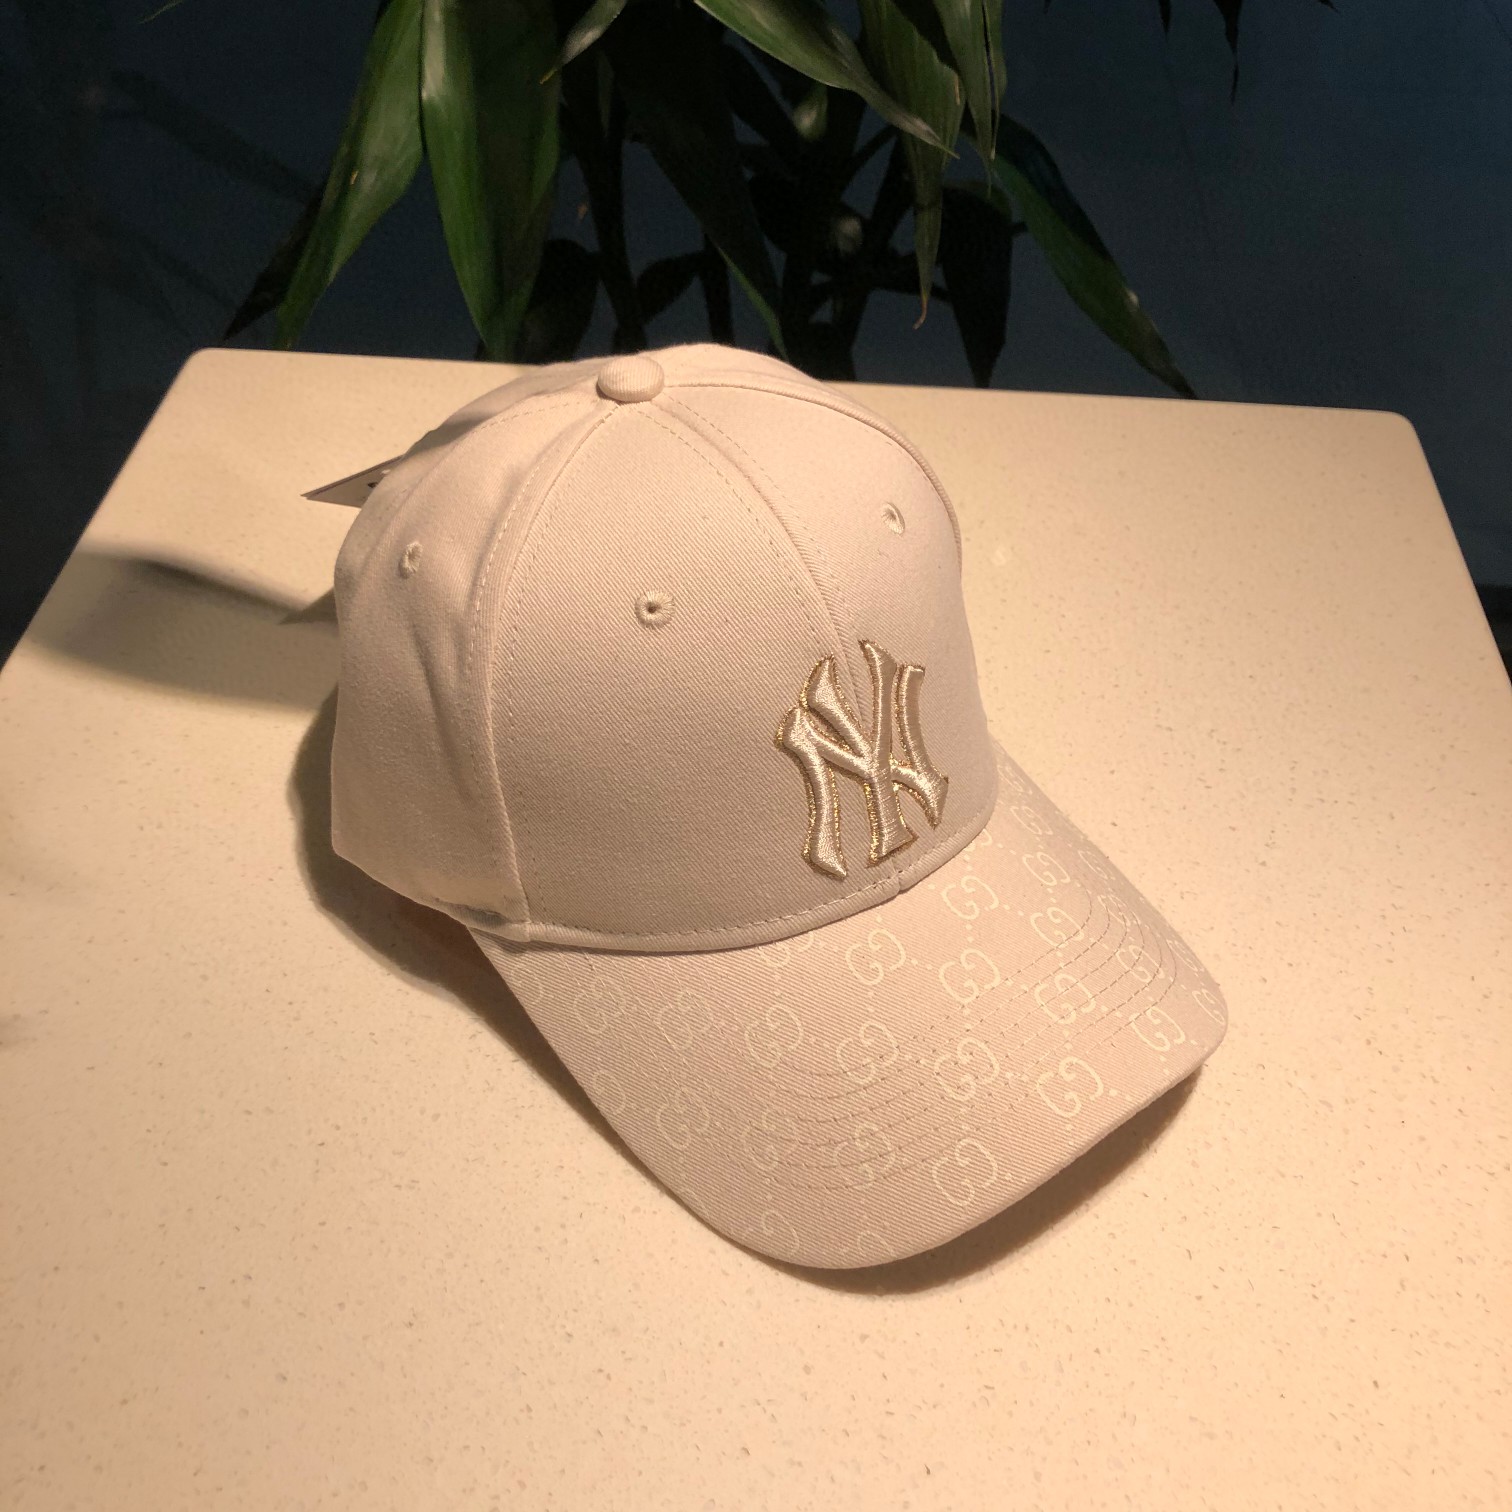 NY Hat in White